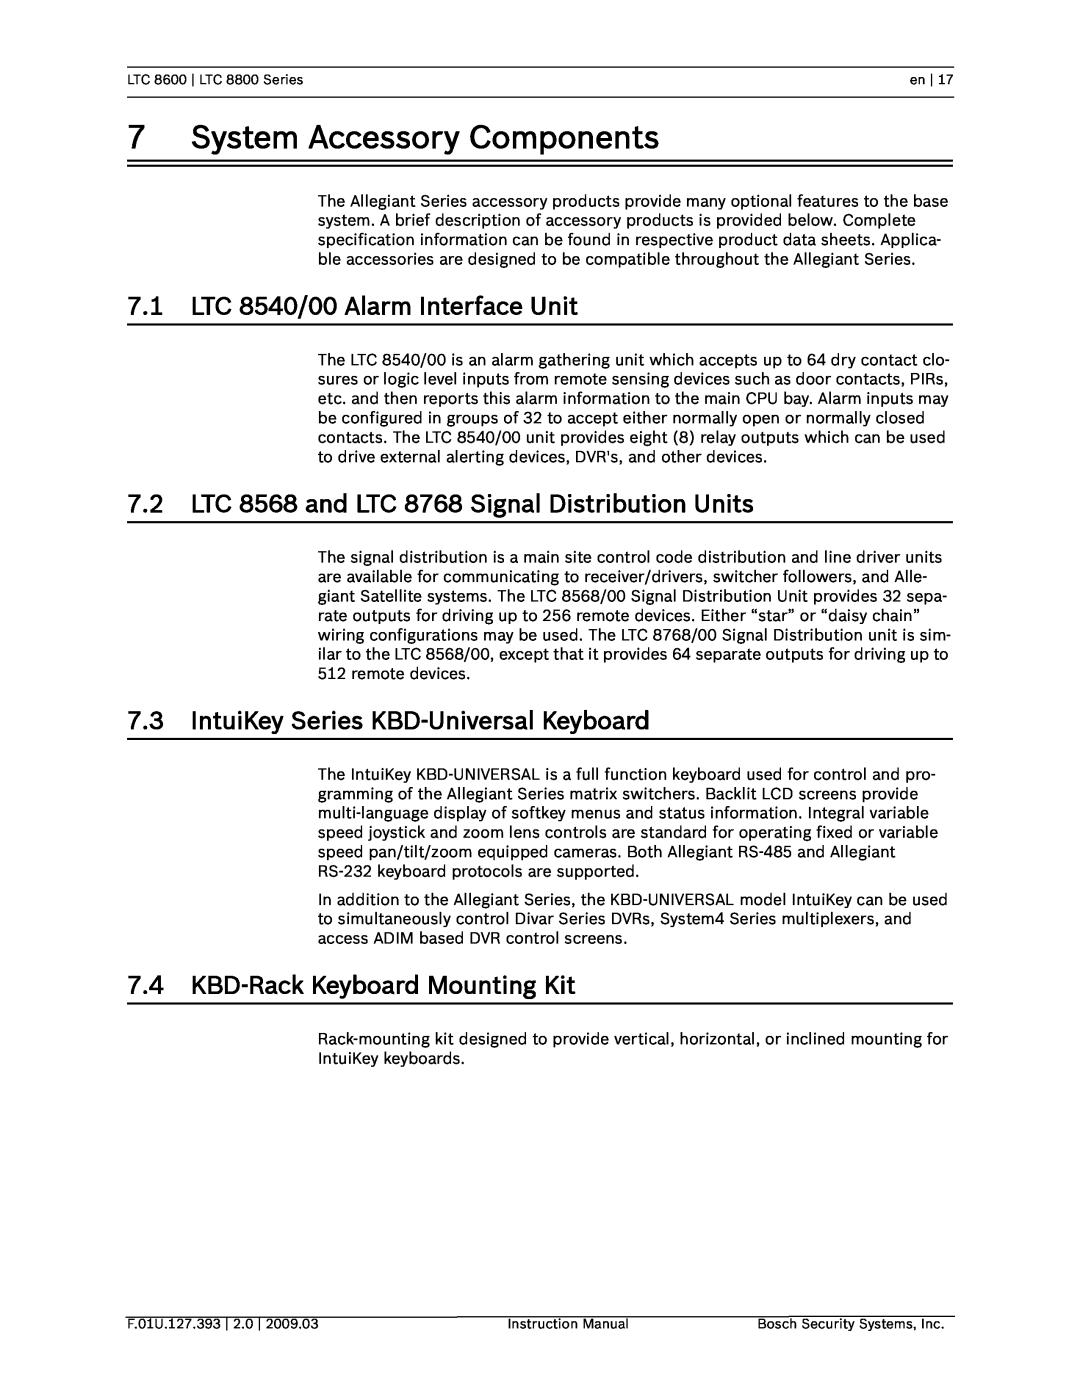 Bosch Appliances LTC 8800, LTC 8600 instruction manual System Accessory Components, 7.1LTC 8540/00 Alarm Interface Unit 